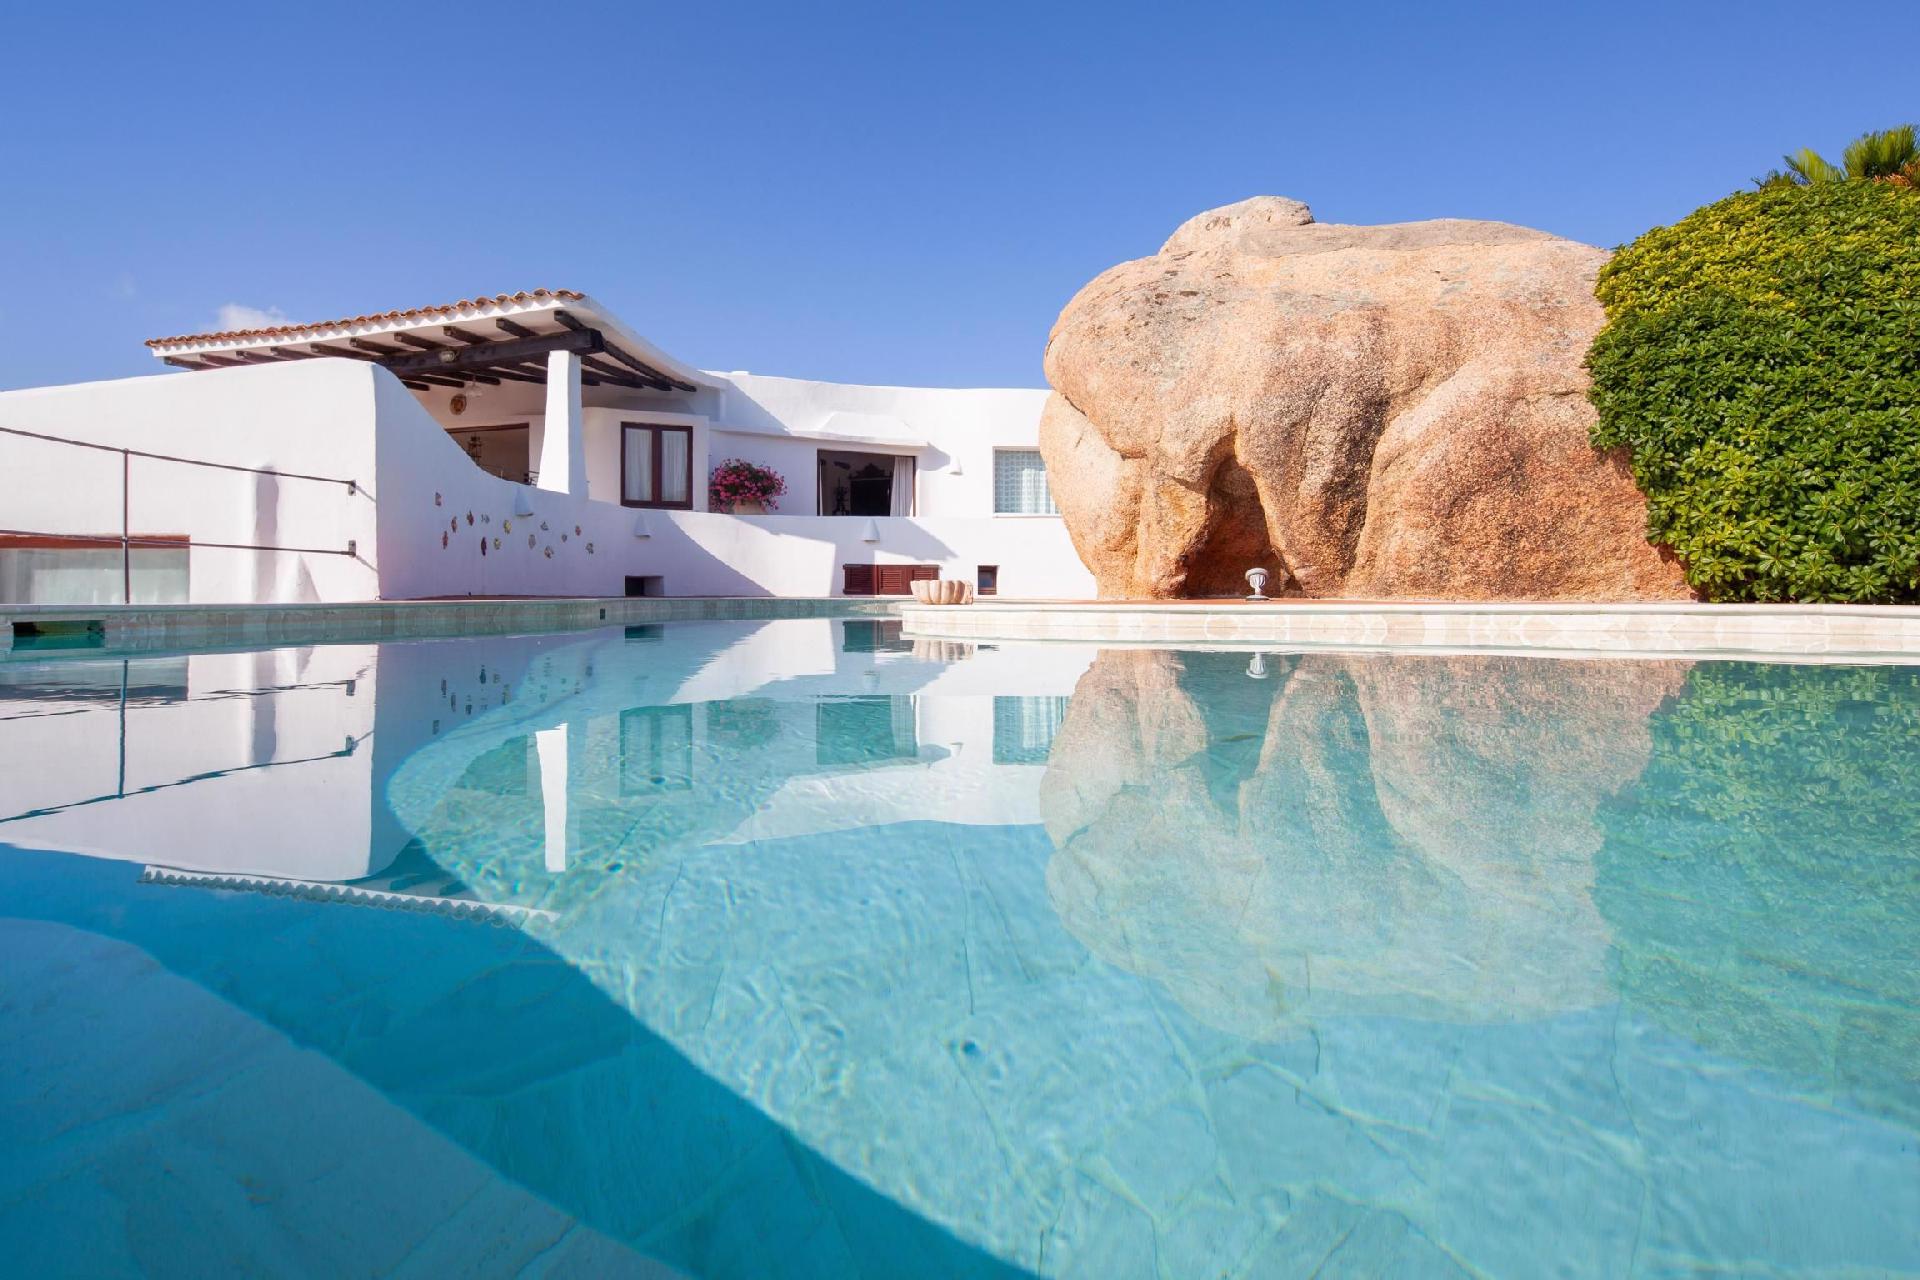 Ferienhaus in Punta Sardegna mit Privatem Pool  in Europa